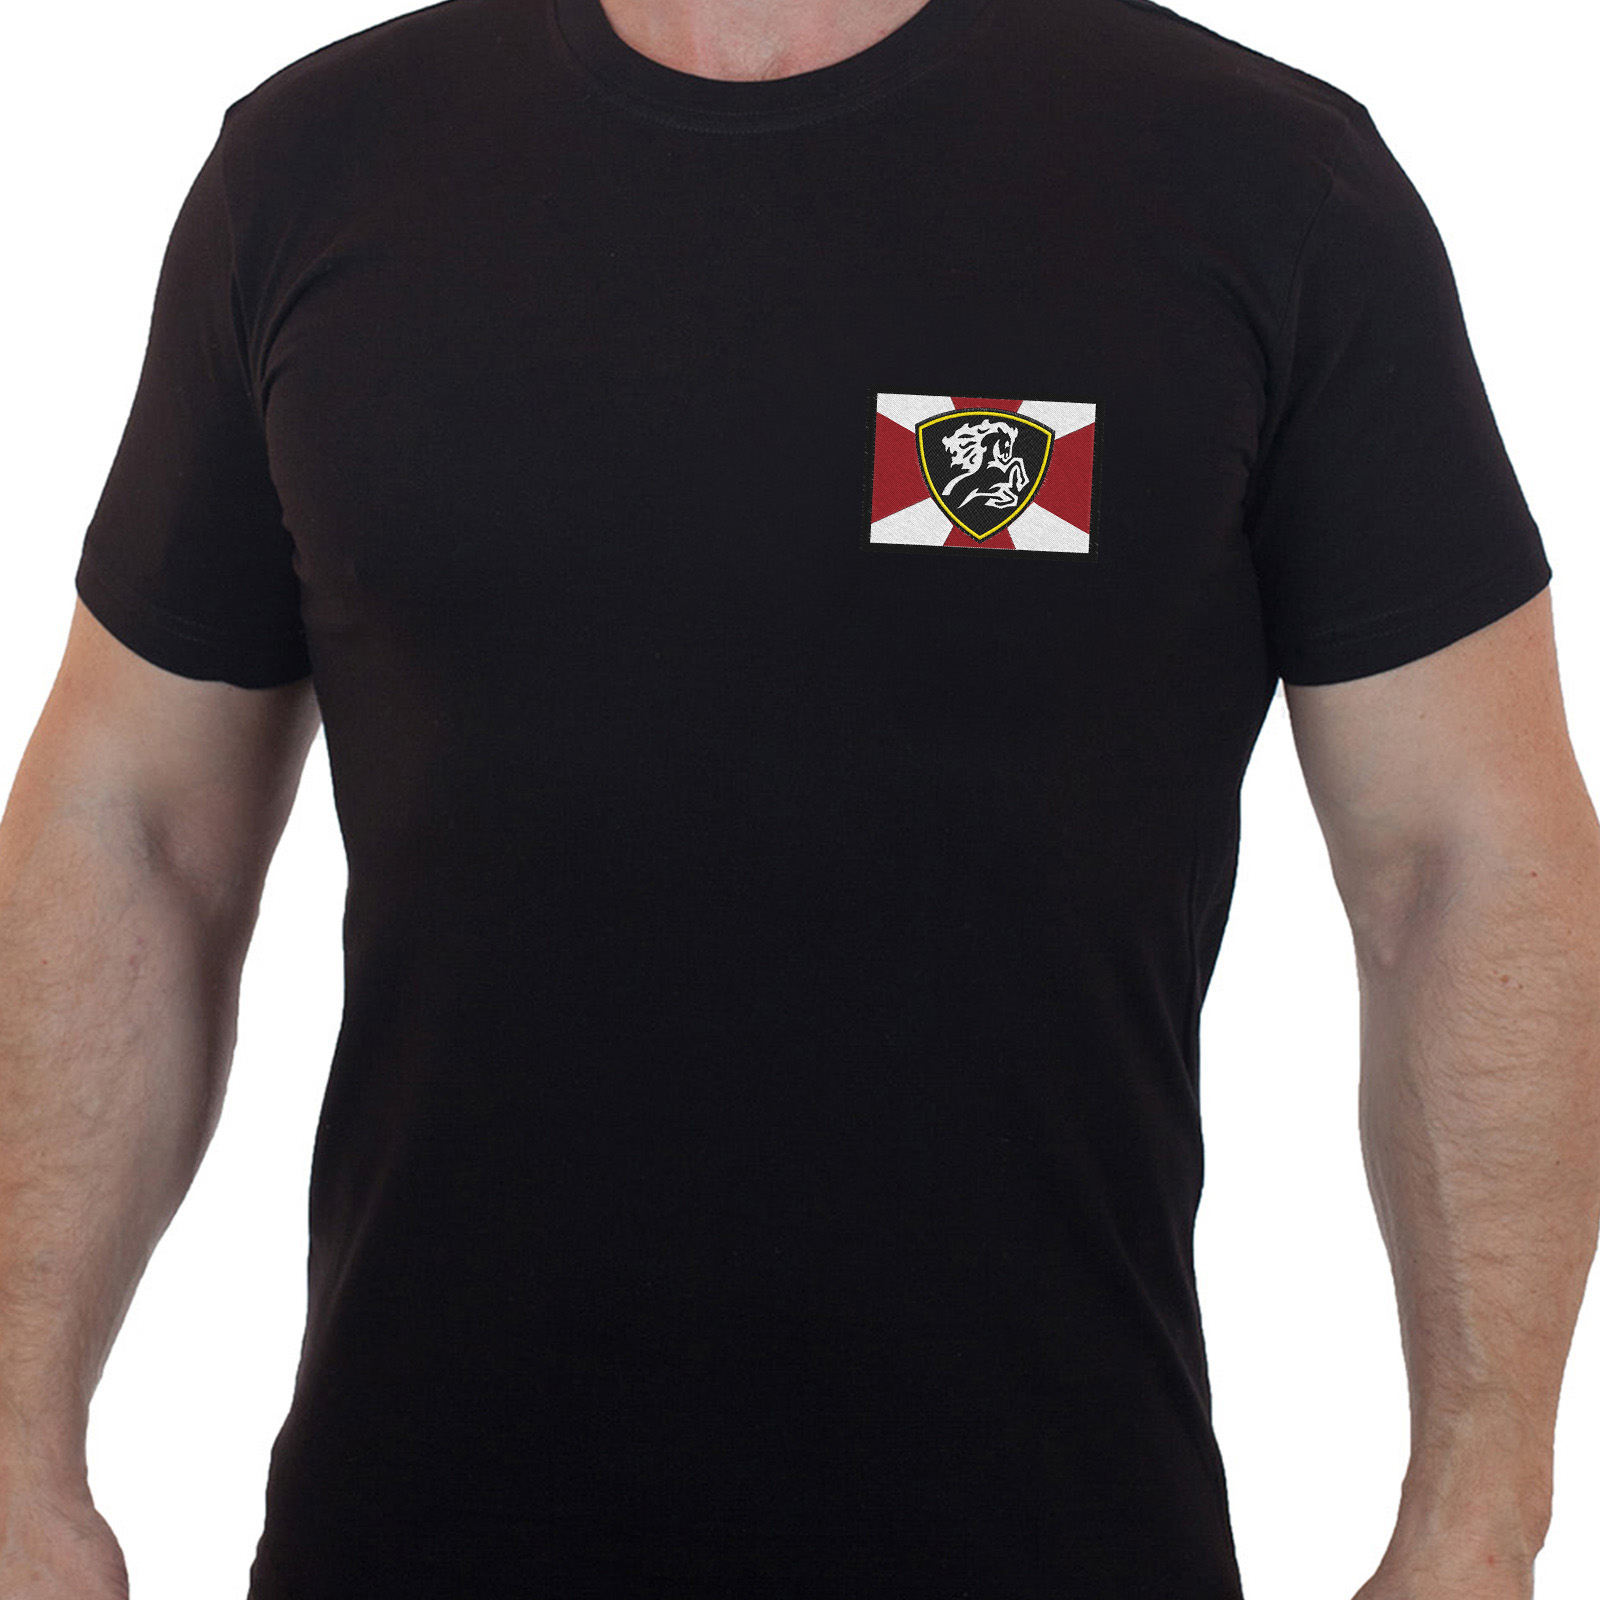 Купить черную футболку с вышитым шевроном Северо-Кавказский округ МВД онлайн выгодно